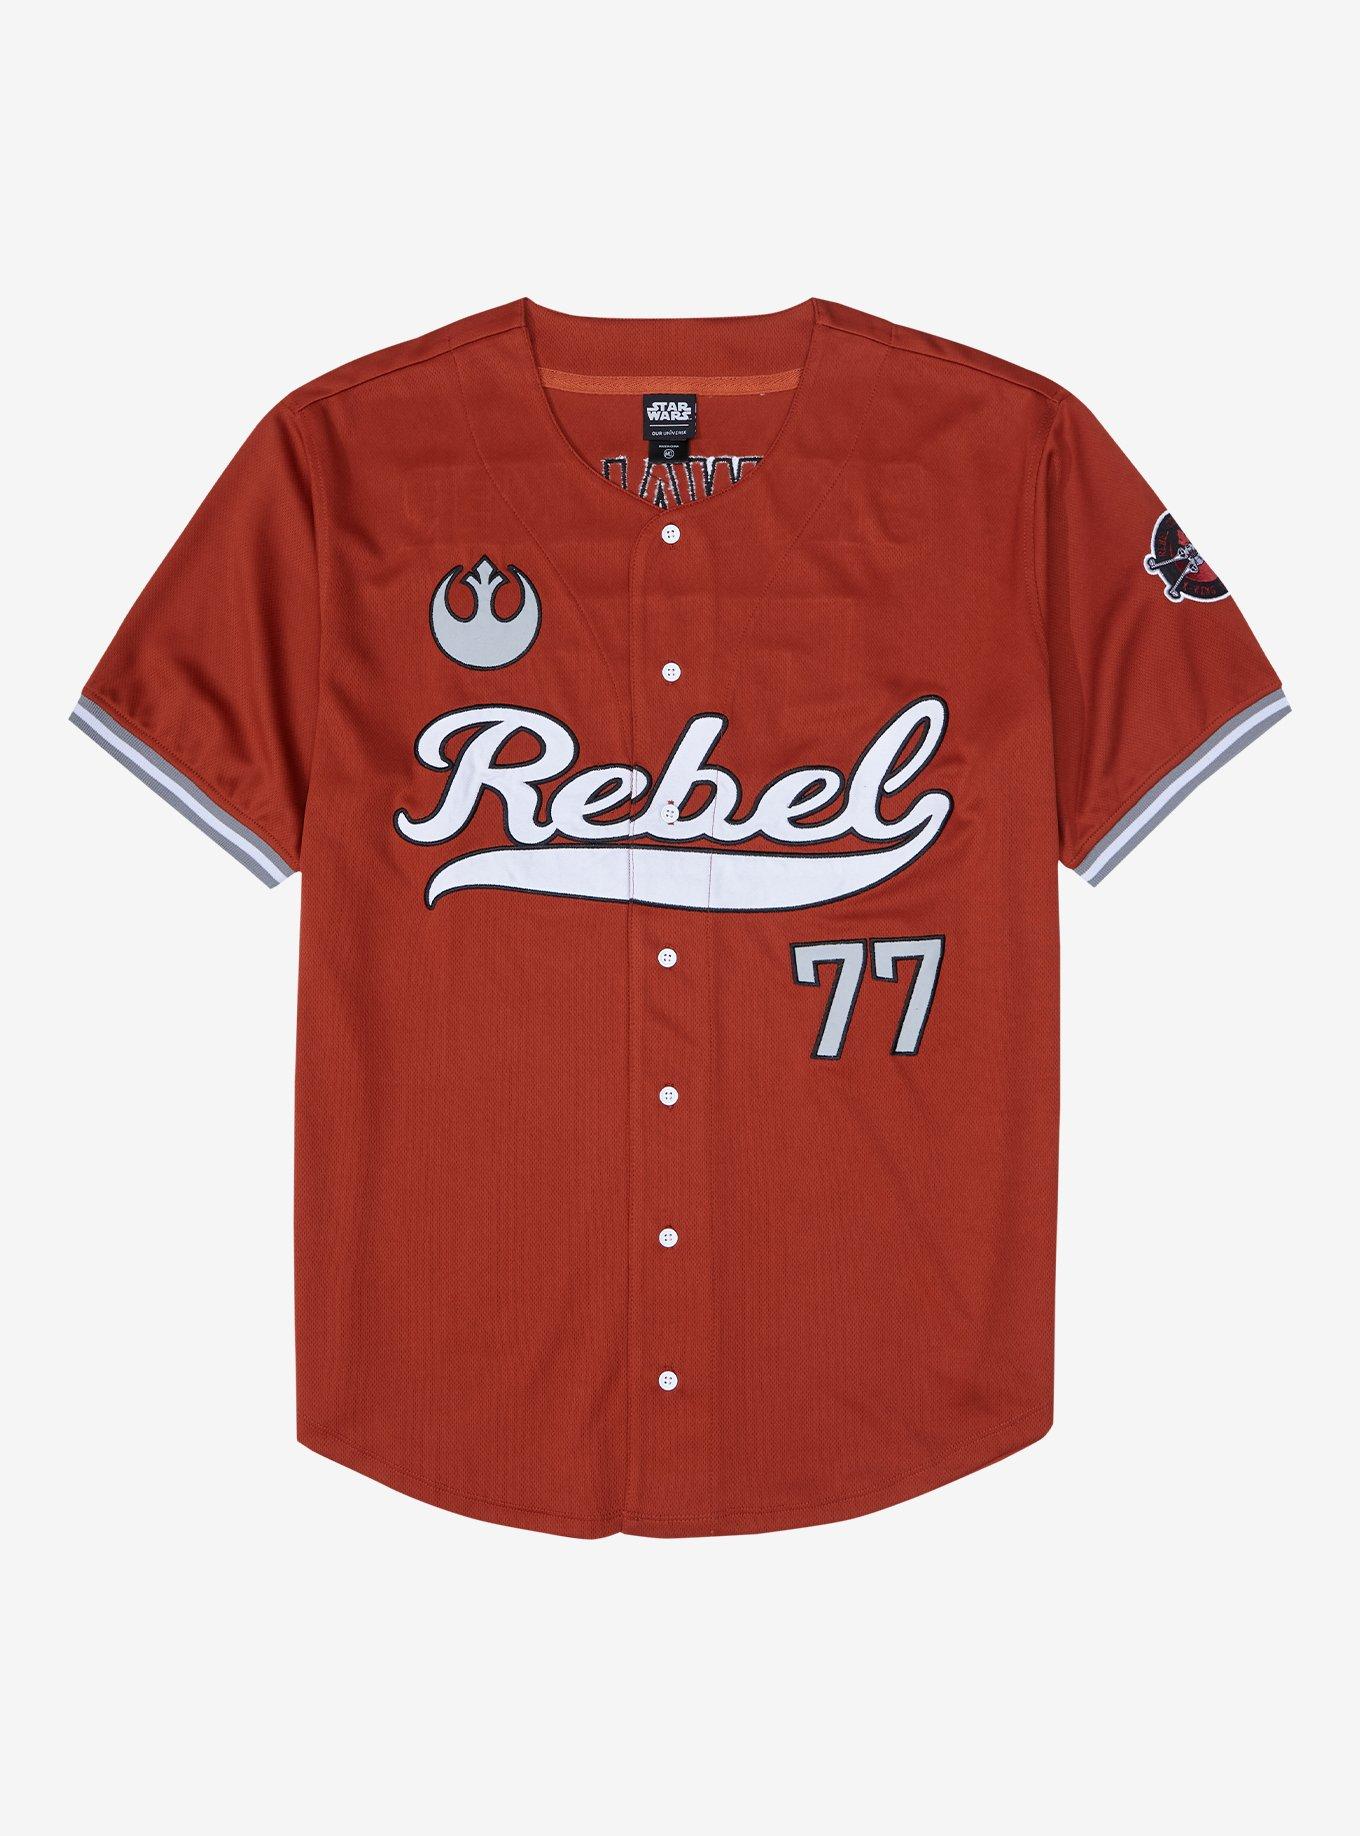  Custom Baseball Jersey Stitched Personalized Baseball Shirts  Sports Uniform for Men Women Boy : Sports & Outdoors